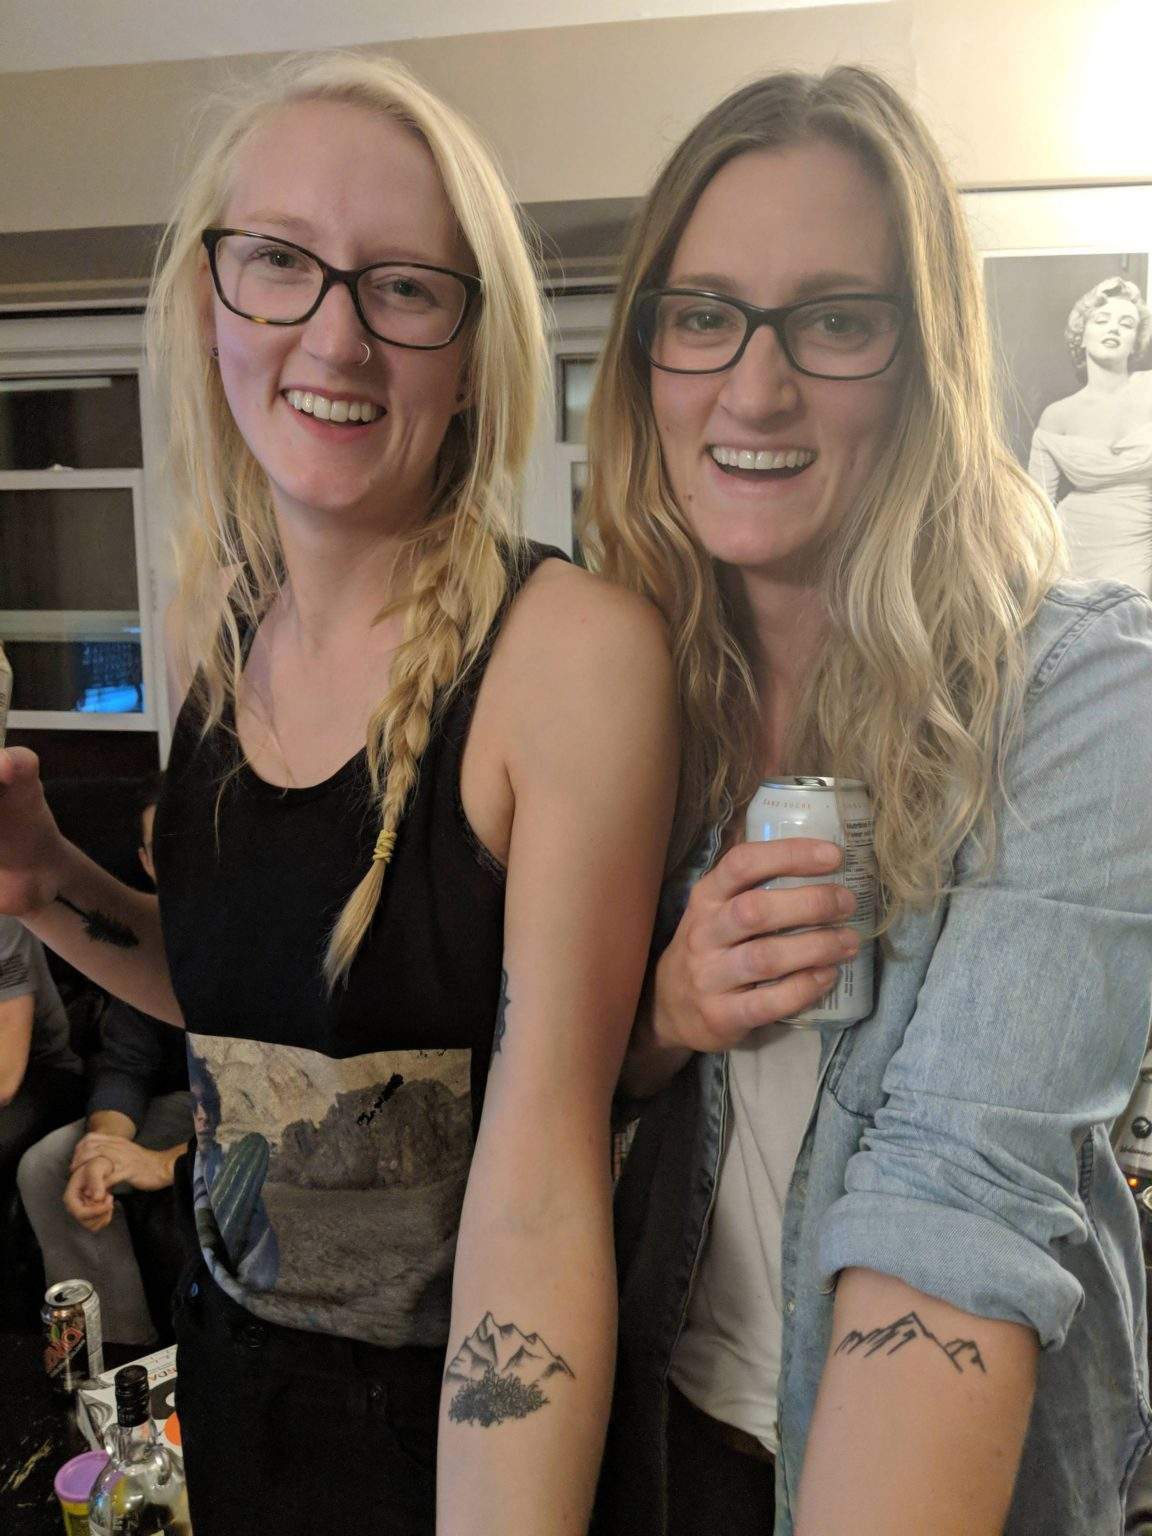 У незнакомок одинаковые татуировки.